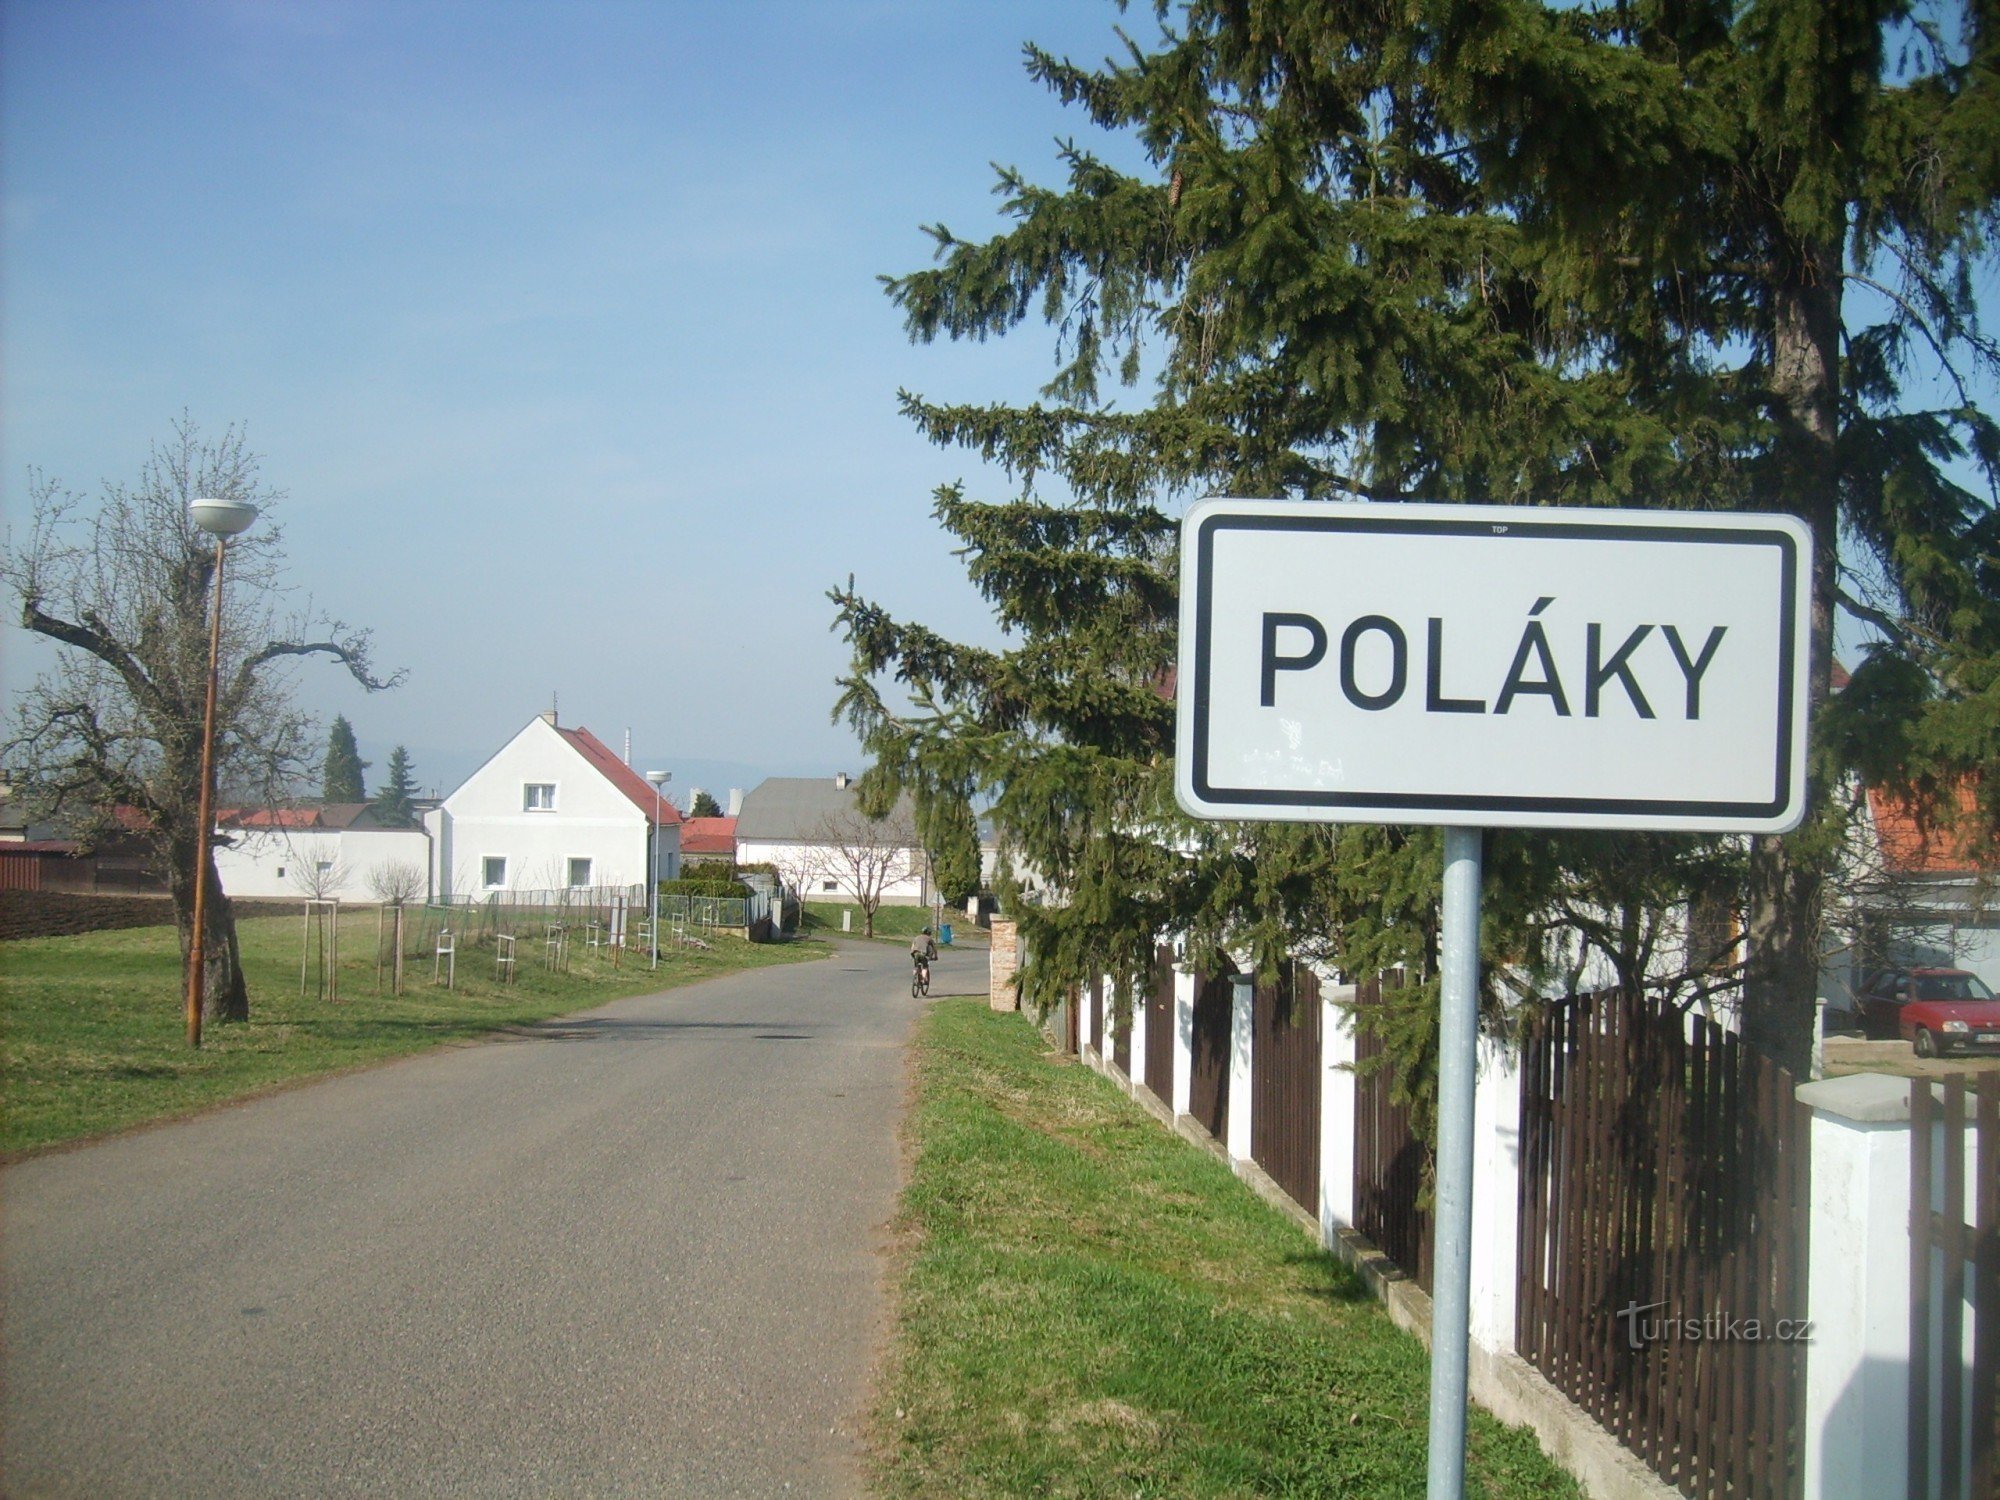 ポーランド人の入植